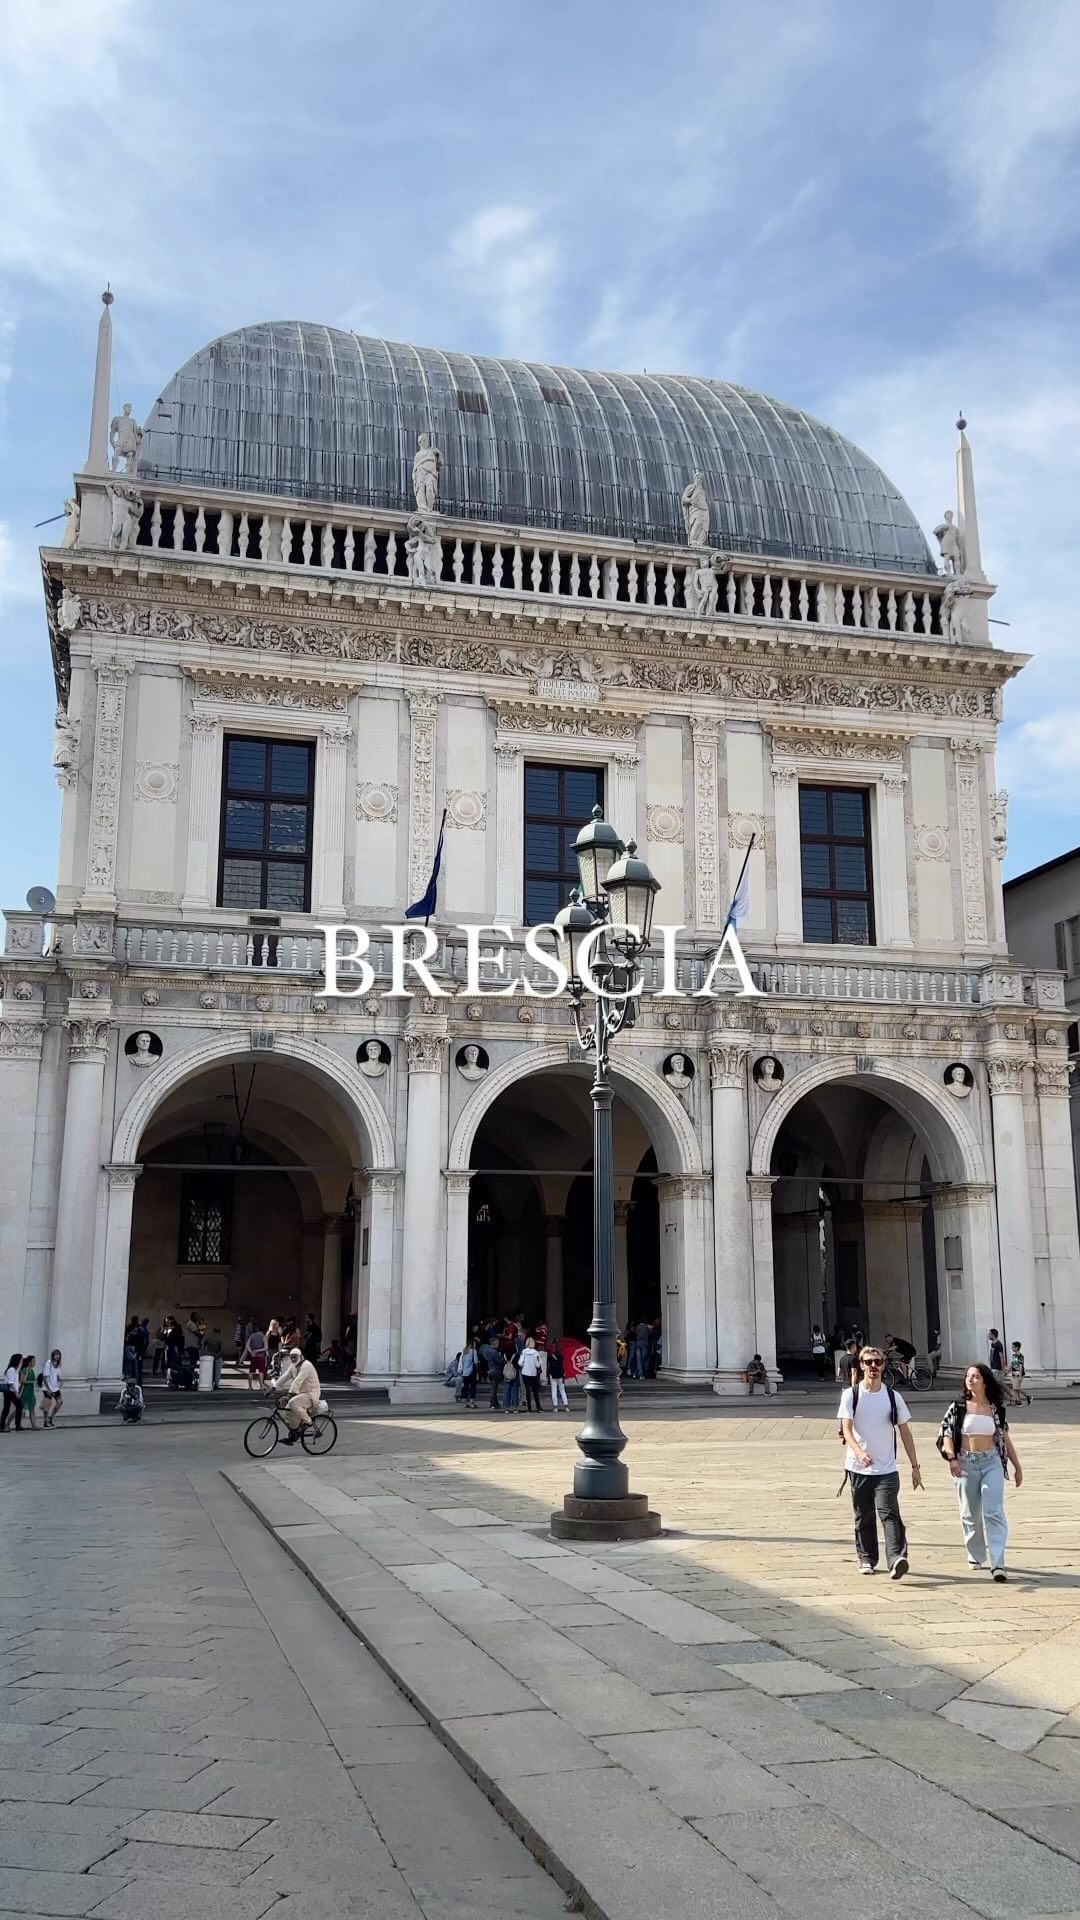 Wine and Culture in Brescia